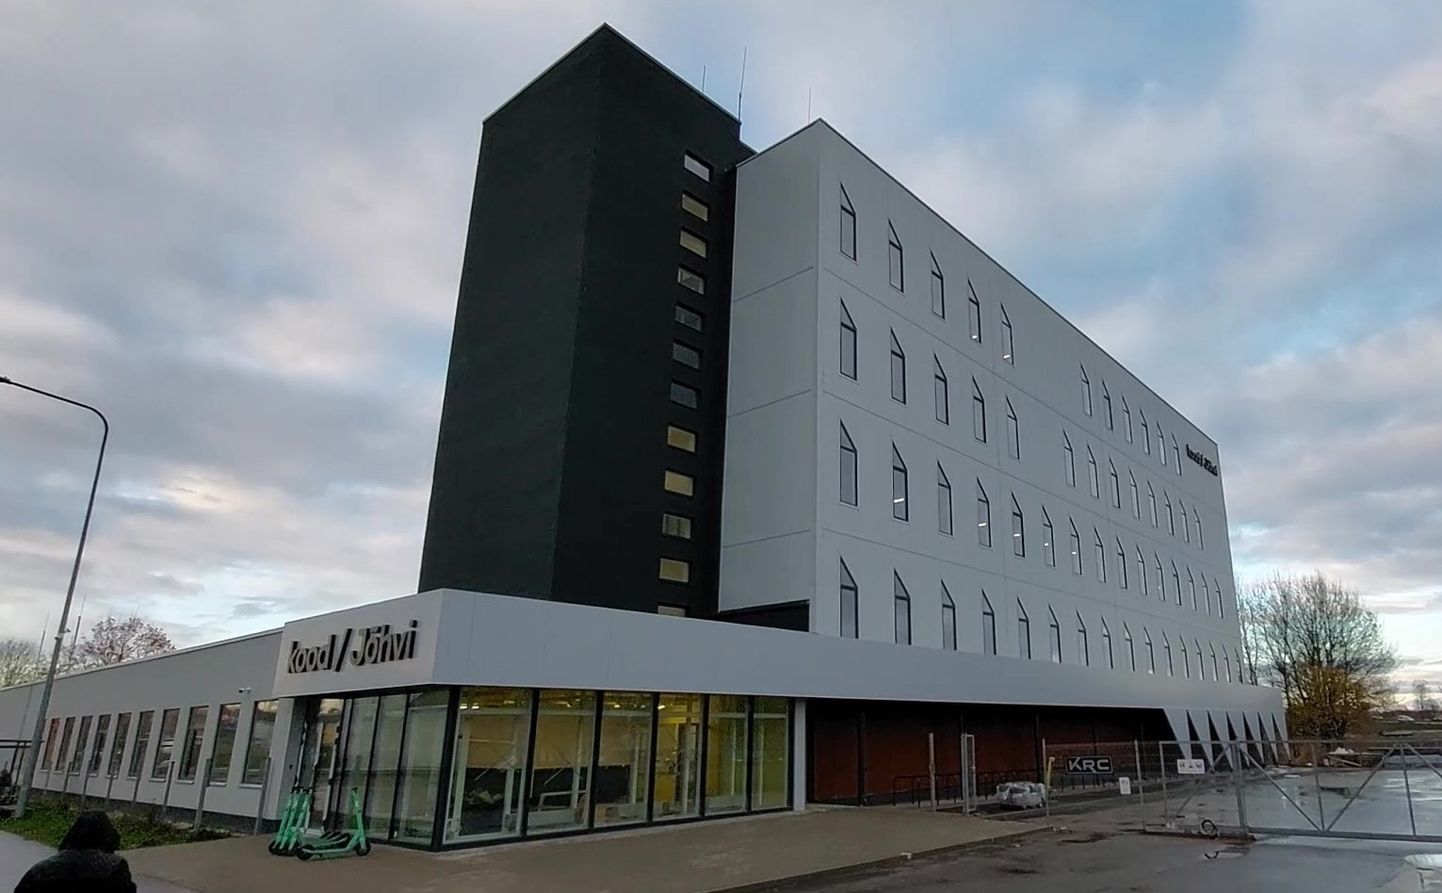 Tehnoloogiakooli uus õppehoone asub Jõhvi mikrorajoonis aadressil Tartu põik 2 olnud kunagises sidemajas, mis ehitati põhjalikult ümber.